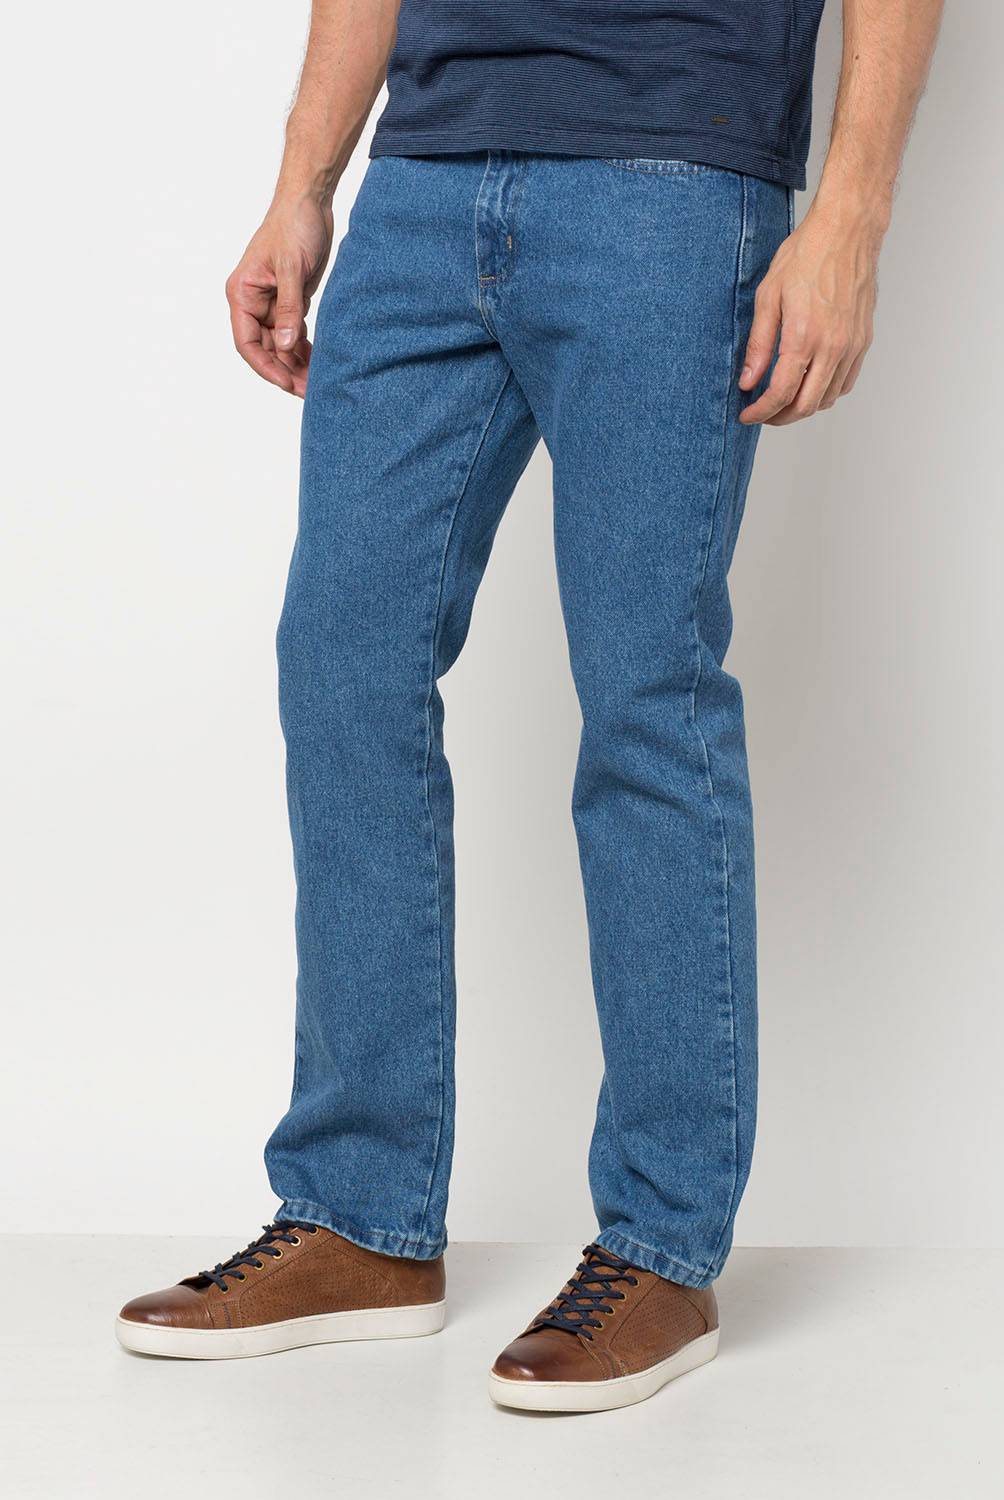 WRANGLER Jeans Greensboro Regular Fit Hombre Wrangler